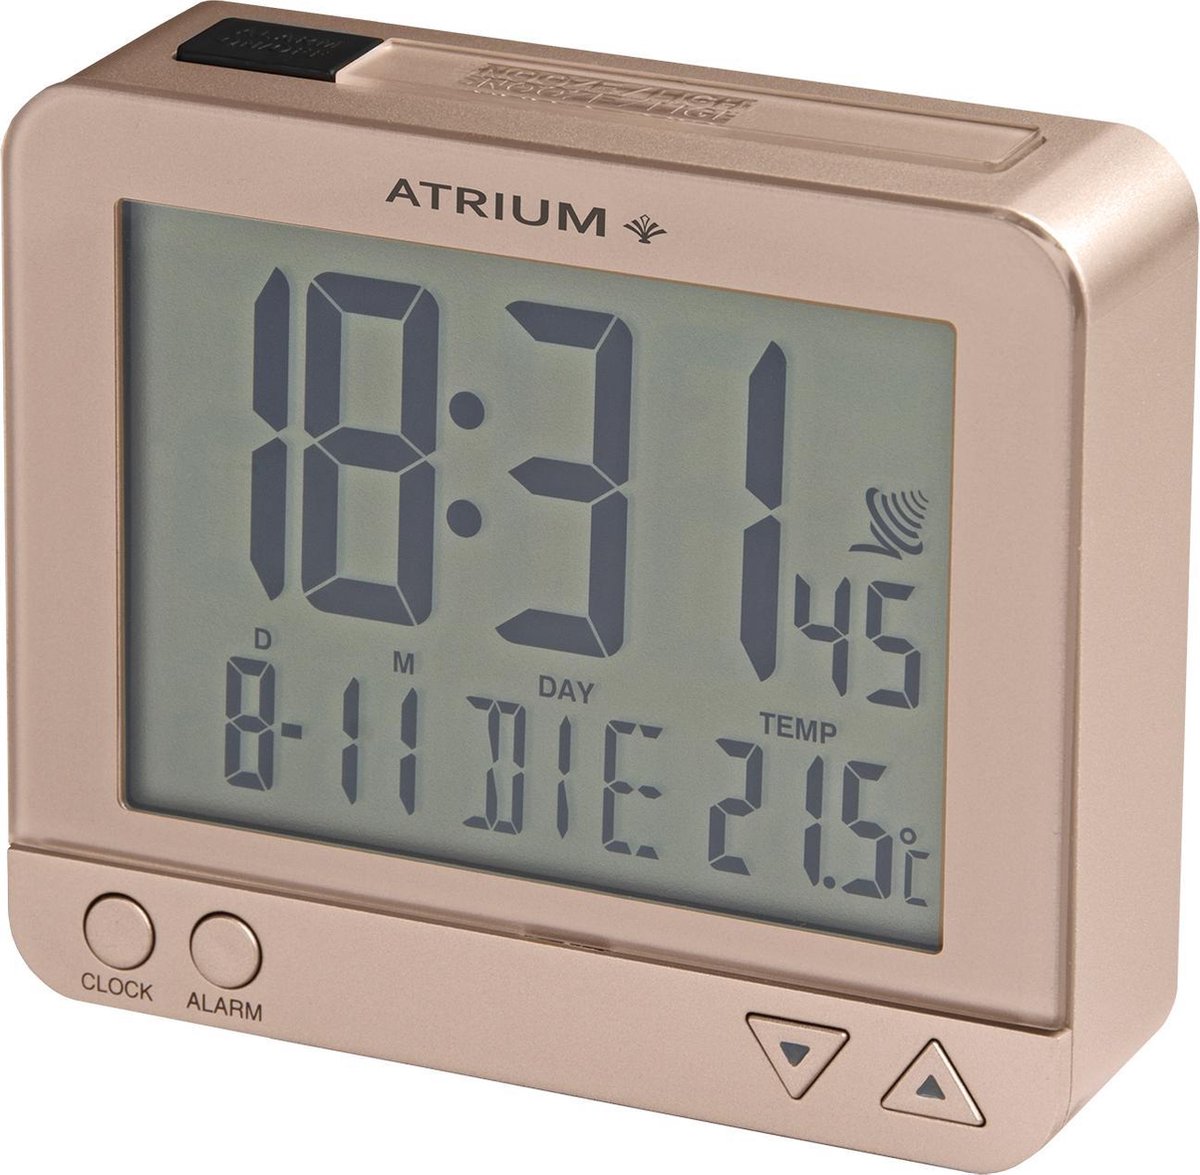 ATRIUM Wekker - Digitaal - Radiogestuurd - Alarm - Rose - Licht - Opbouwend alarmsignaal - Snooze - Duidelijk - Wektijd - Datum - Weekdag - Binnentemperatuur - A760-17